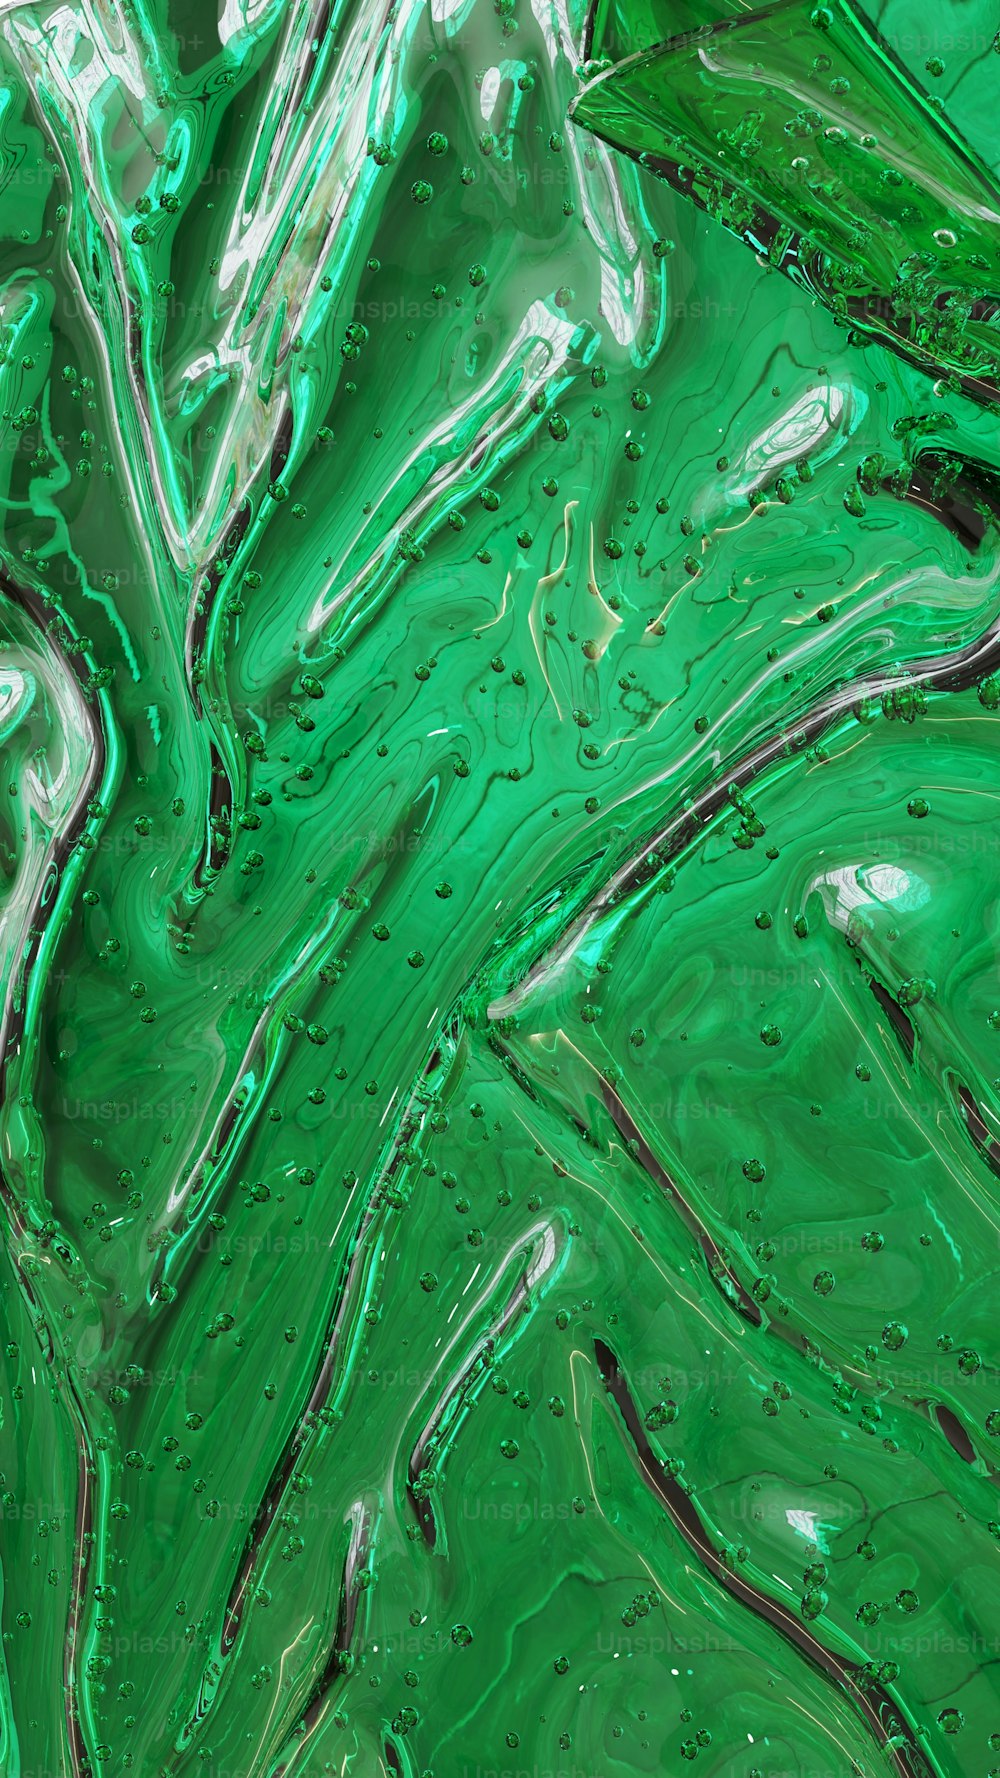 a close up of a green liquid texture